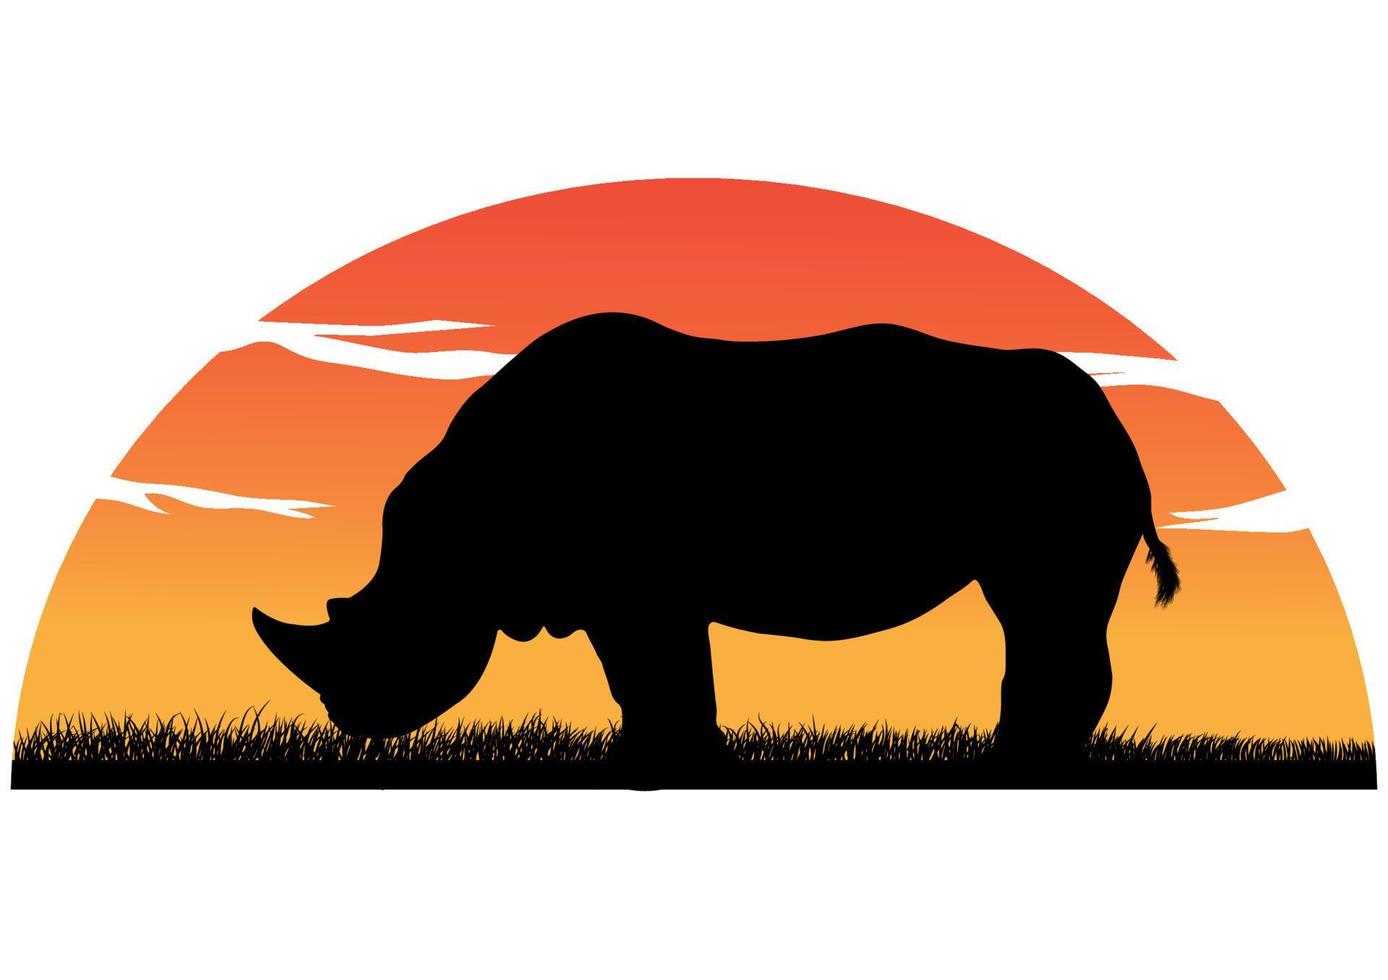 silueta de dibujo de gráficos de un rinoceronte con fondo de puesta de sol ilustración vectorial fondo blanco aislado vector